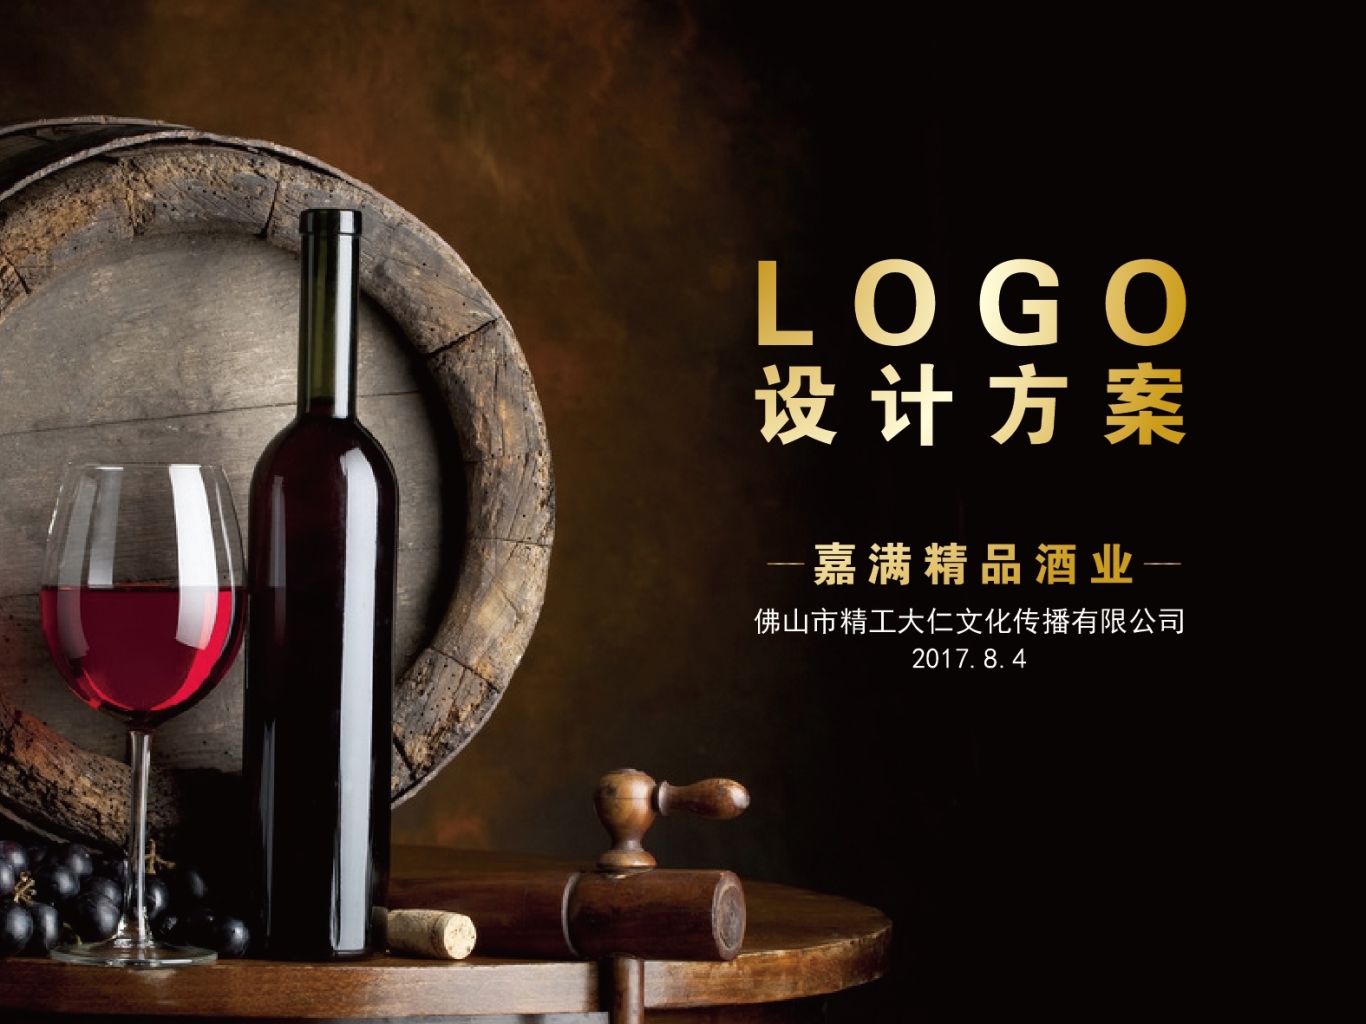 嘉满精品酒业logo设计方案图0